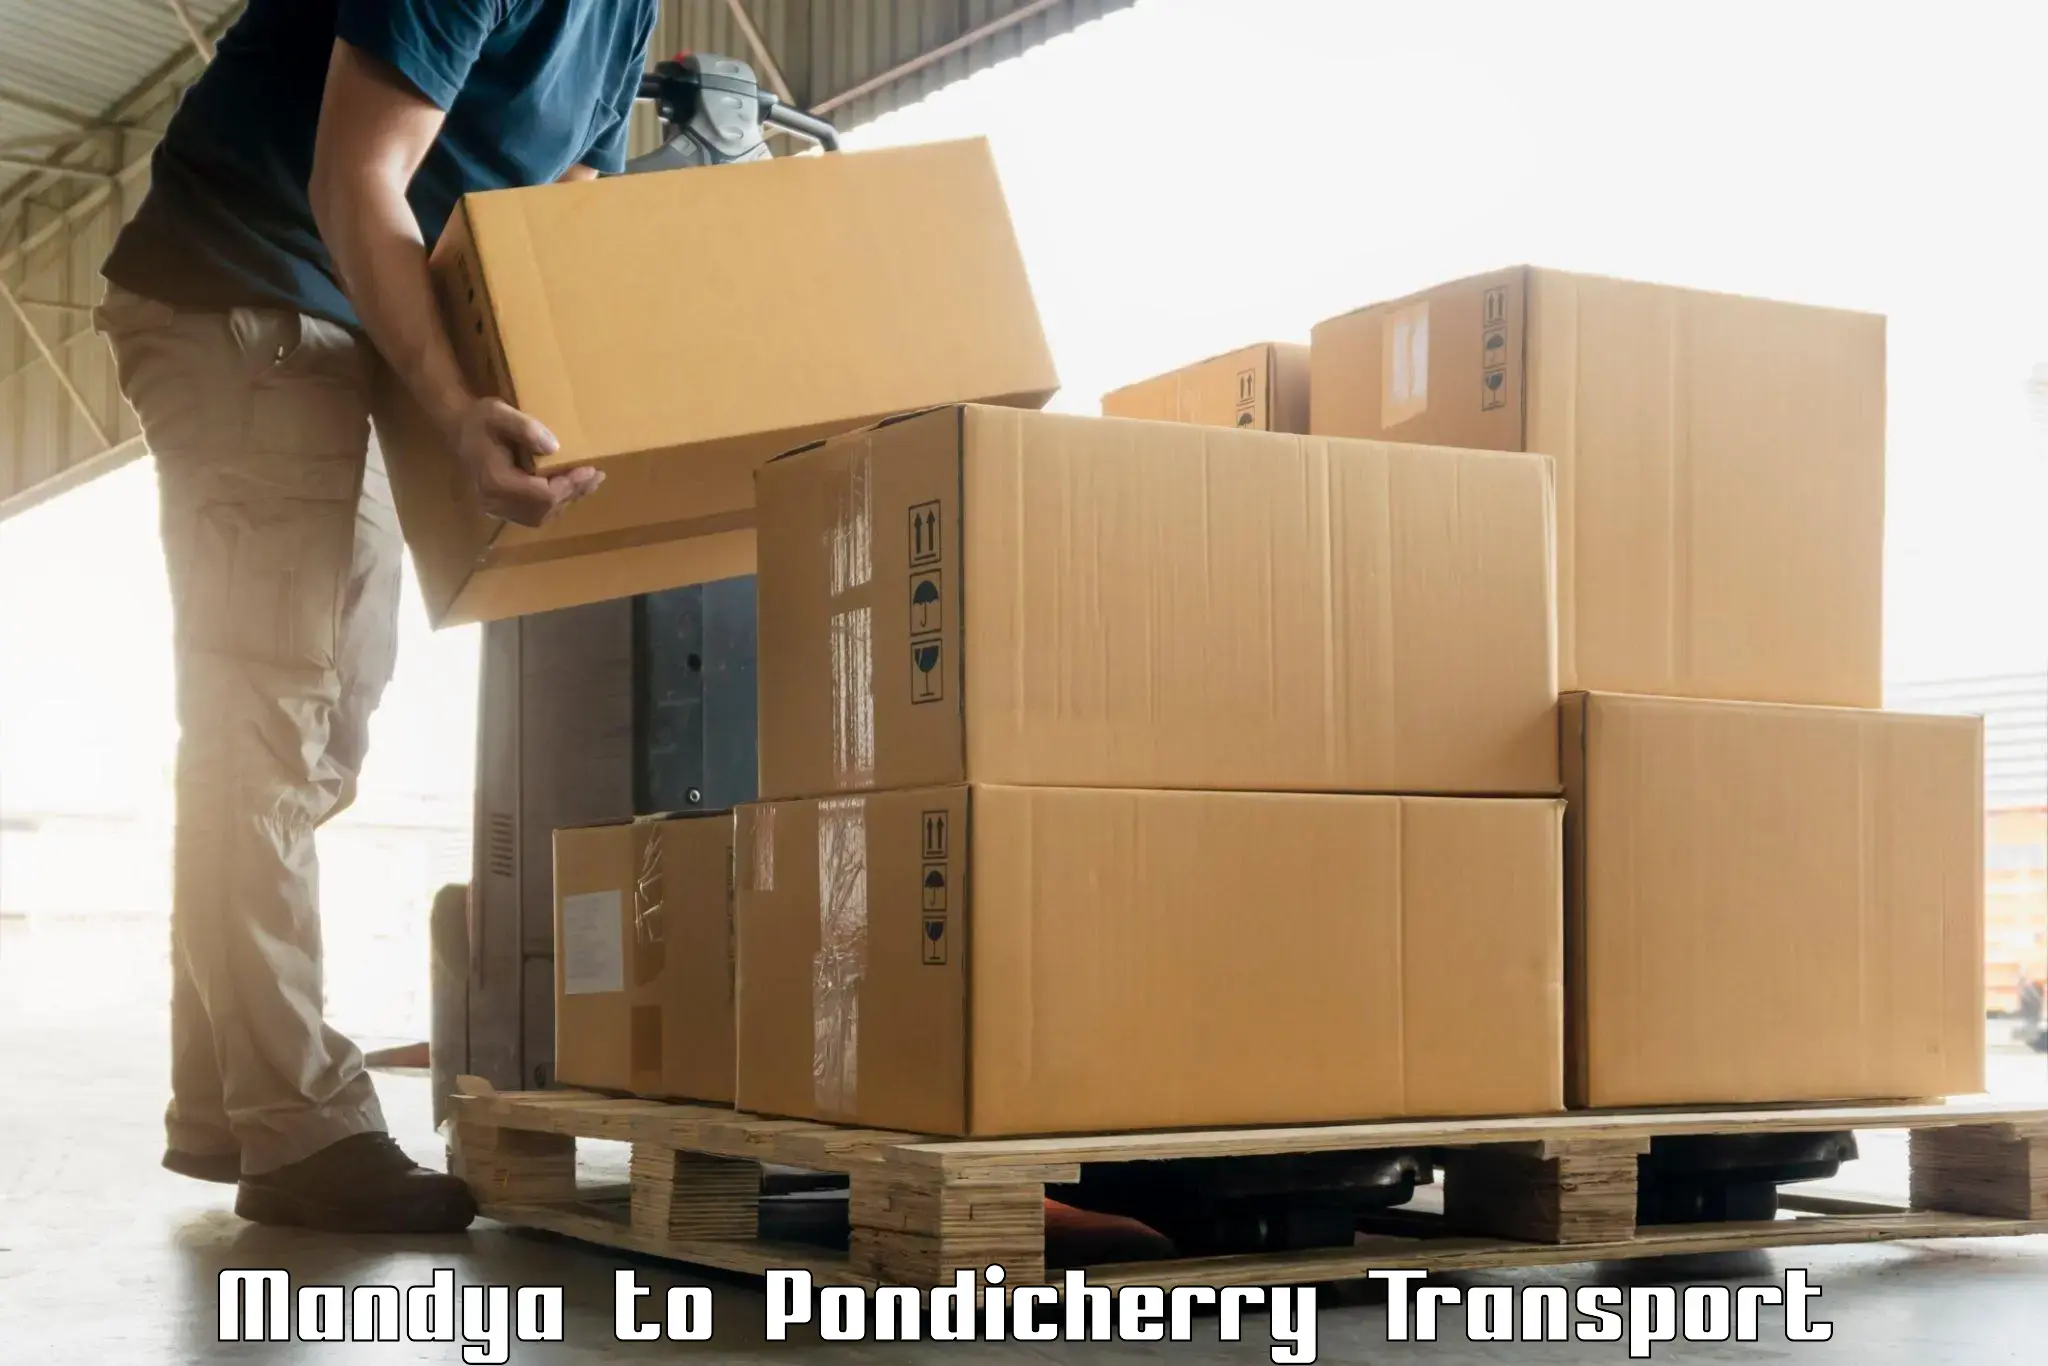 Cargo transportation services Mandya to Pondicherry